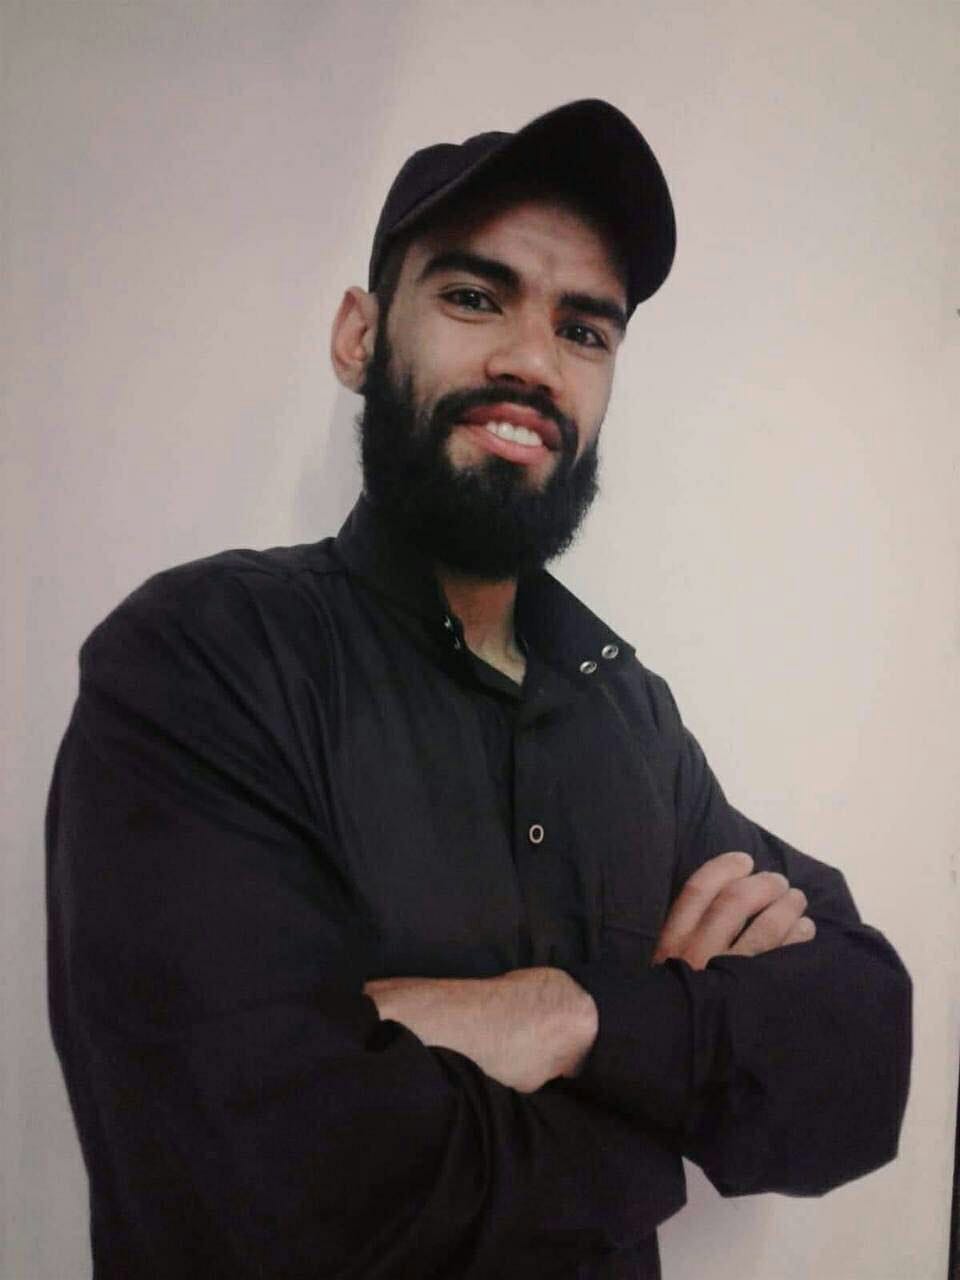 يوسف صالح بركات شريم (29 عامًا)، قائد كتائب القسام في مخيم جنين، اغتالته قوة مستعربين وسط المدينة يوم 16 آذار.